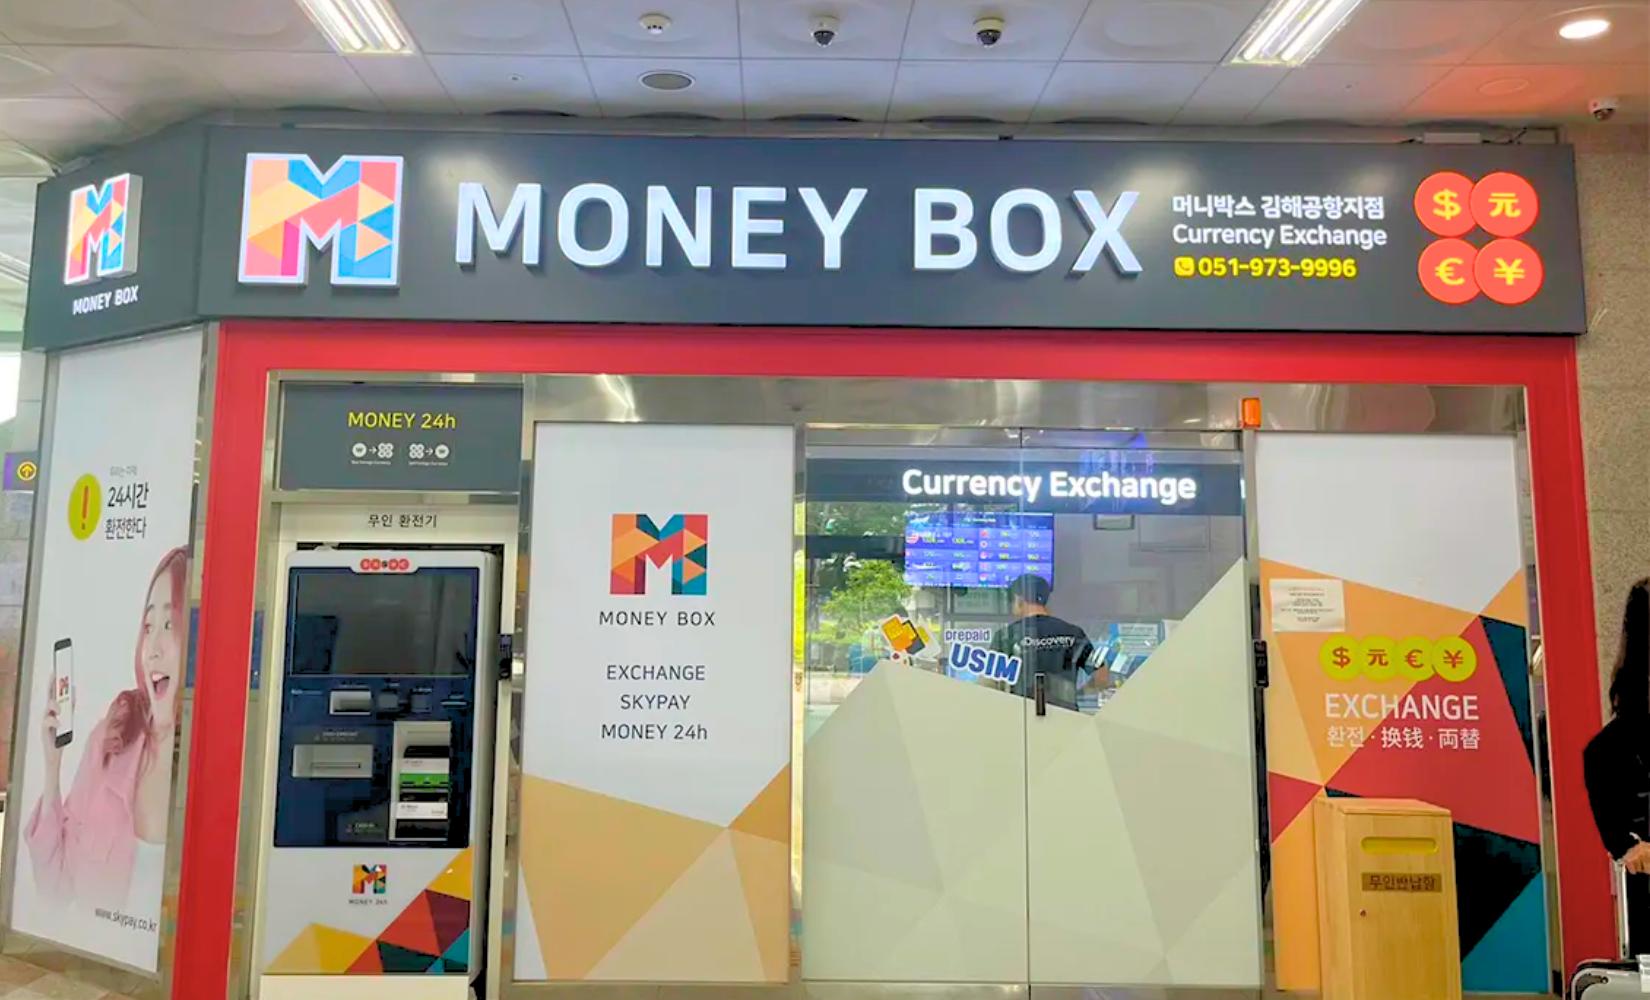 Money Box: Điểm đổi tiền tỷ giá hấp dẫn tại sân bay quốc tế Gimhae, Busan